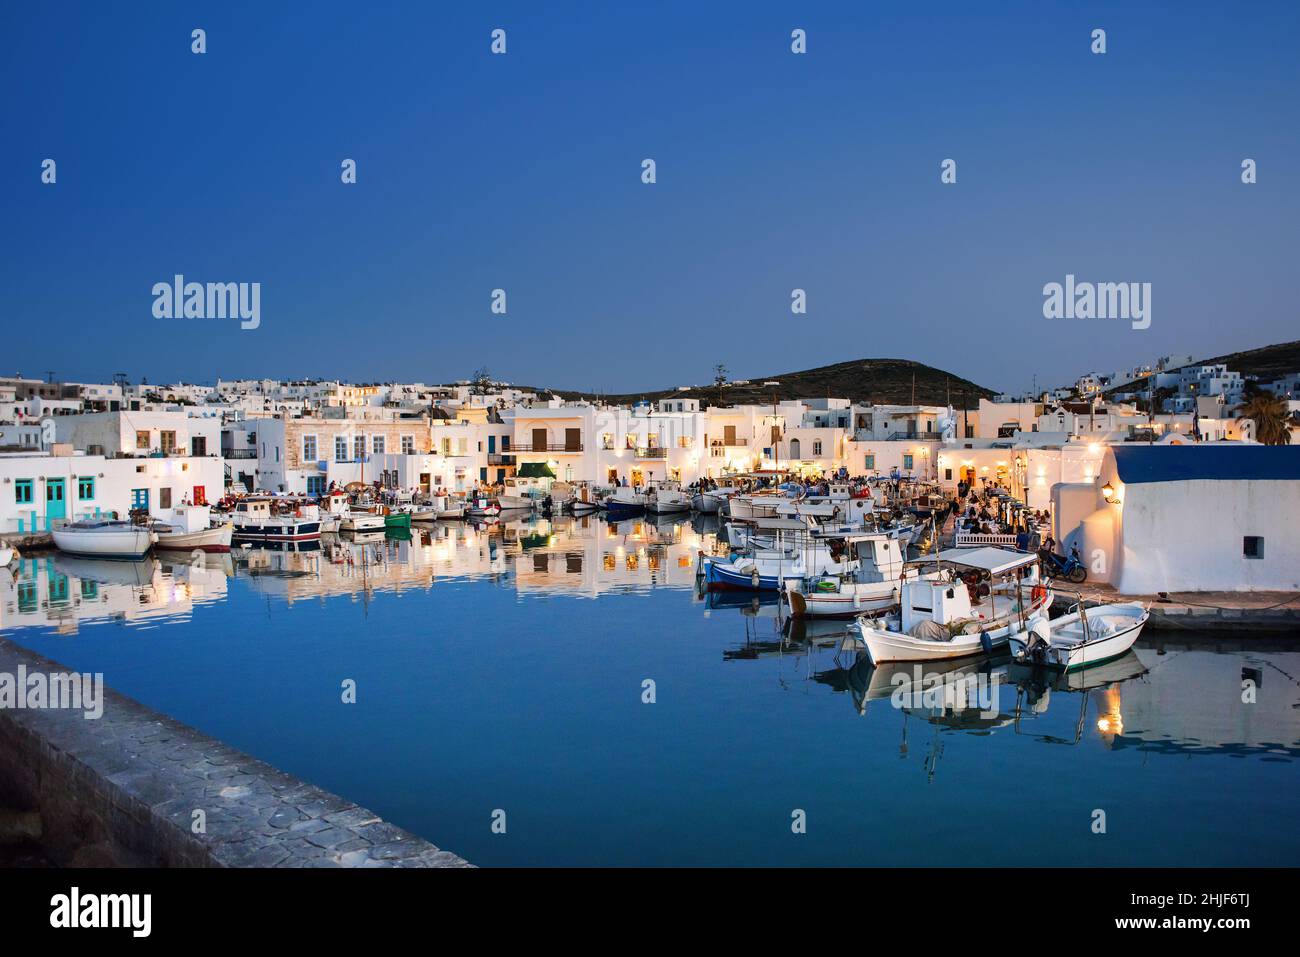 Nachtansicht des Dorfes Naoussa, Insel Paros, Griechenland. Beliebtes Touristenziel in Europa. Stockfoto